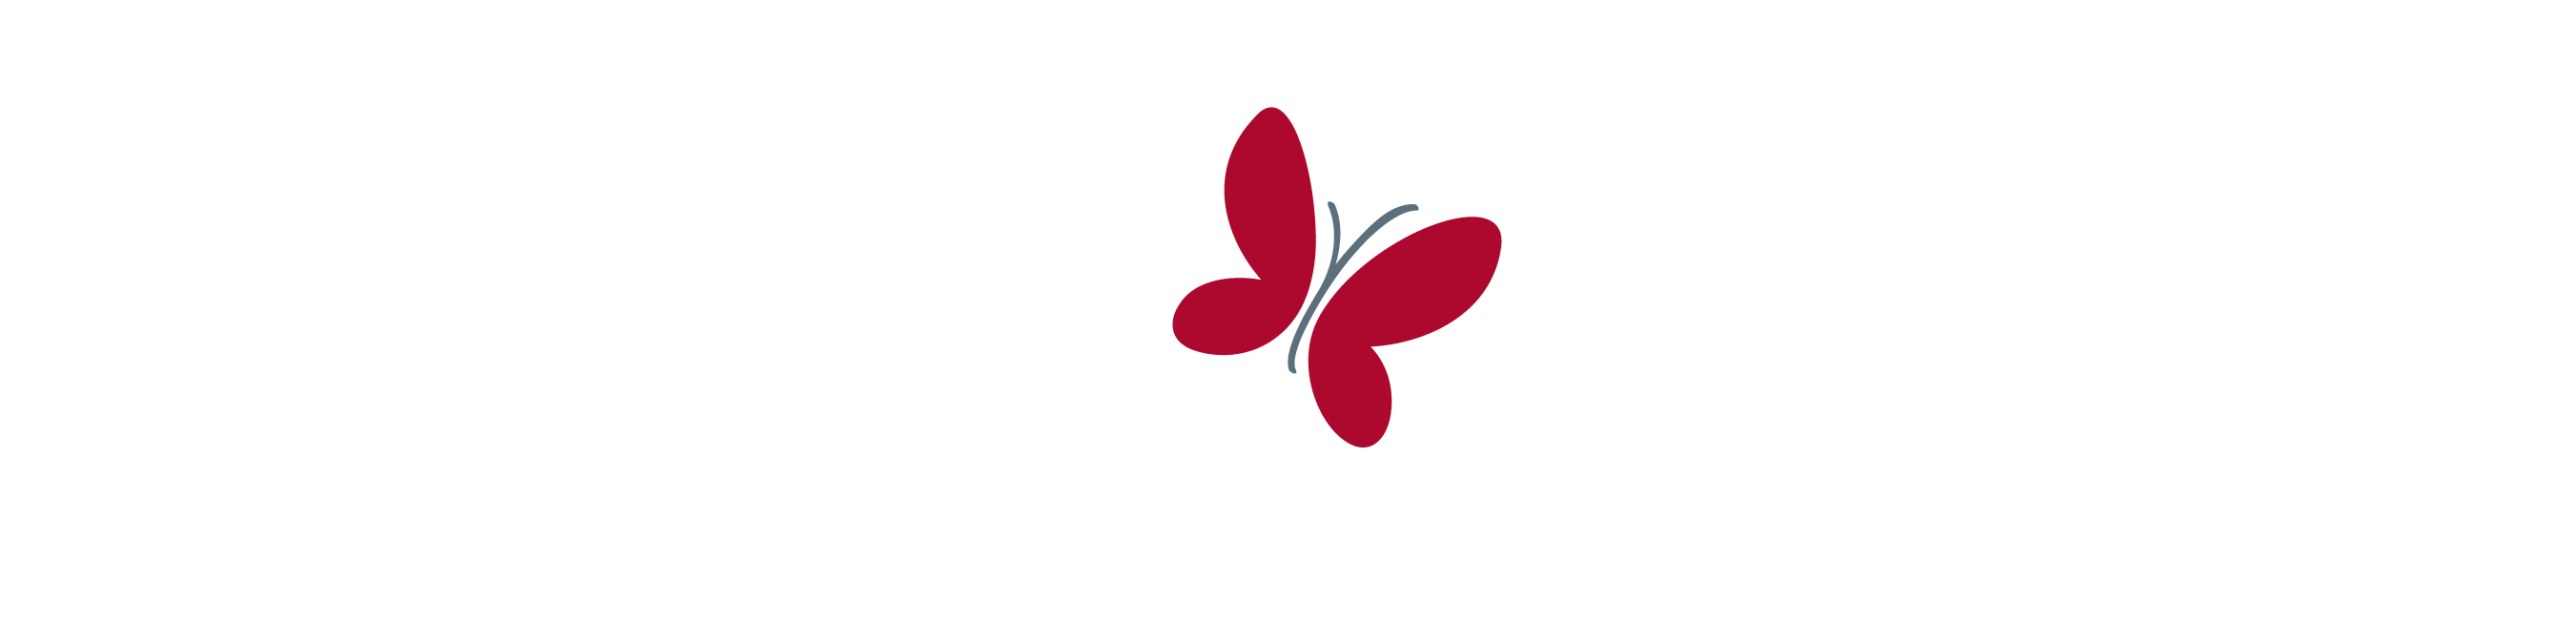 Children's Cancer Research Fund logo logo